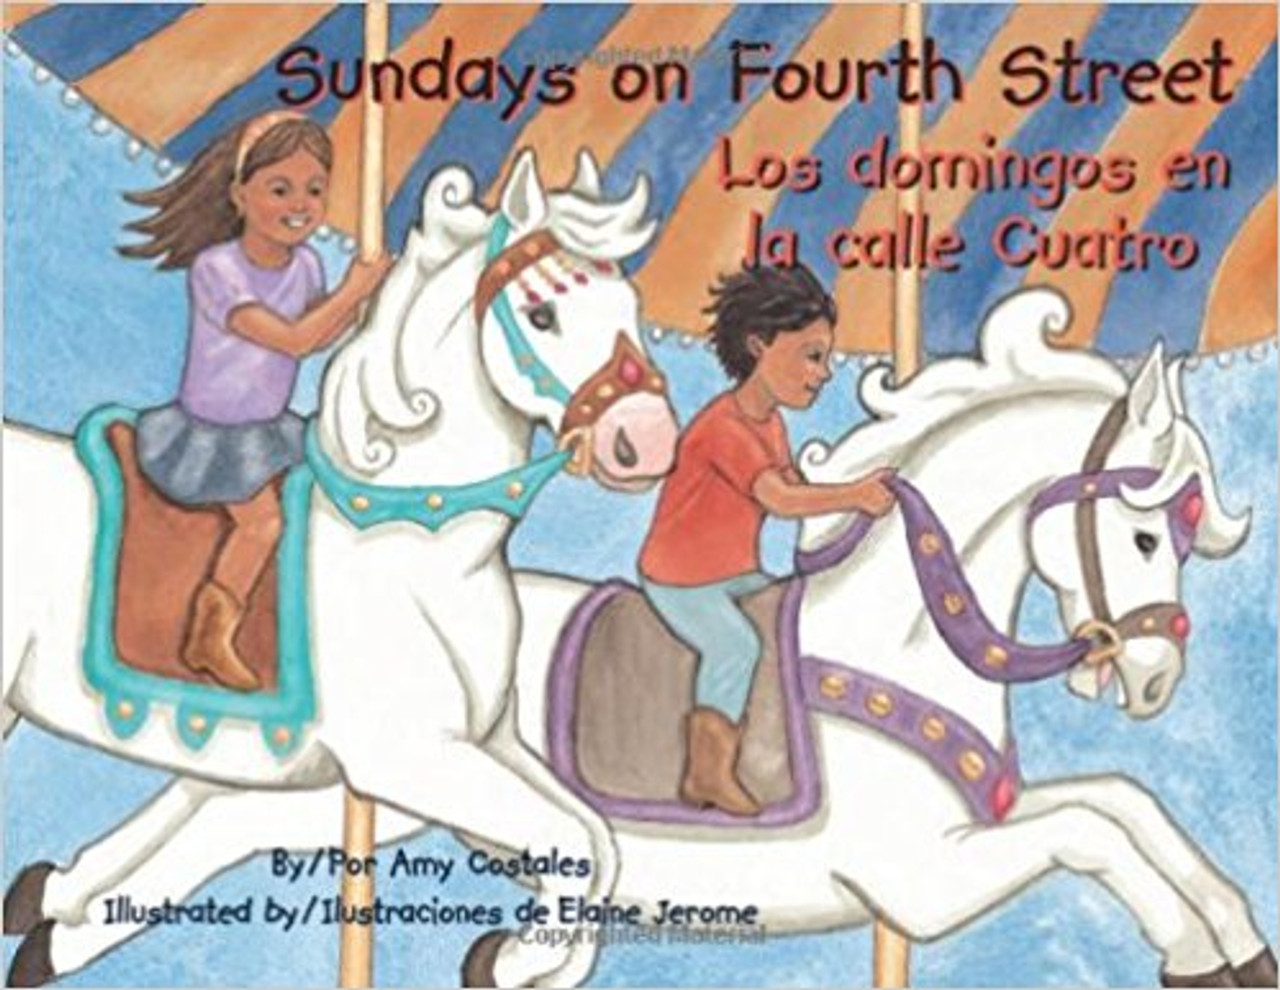 Sundays on Fourth Street / Los domingos en la calle cuatro by Amy Costales 